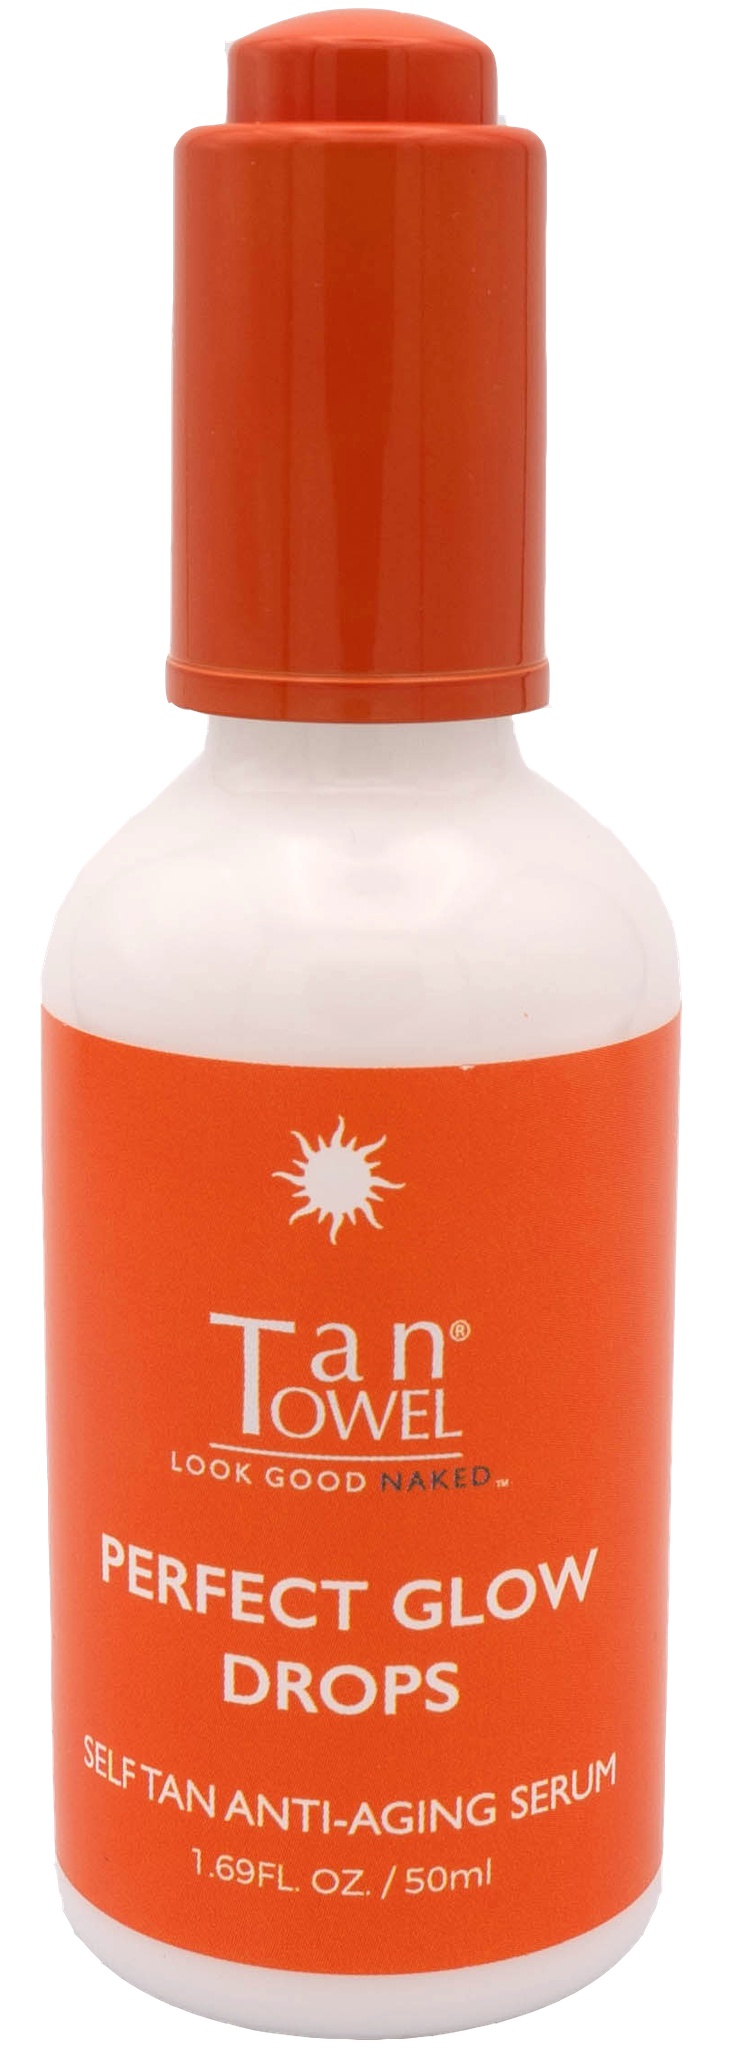 Tan Towel Perfect Glow Drops Self Tan Anti-aging Serum